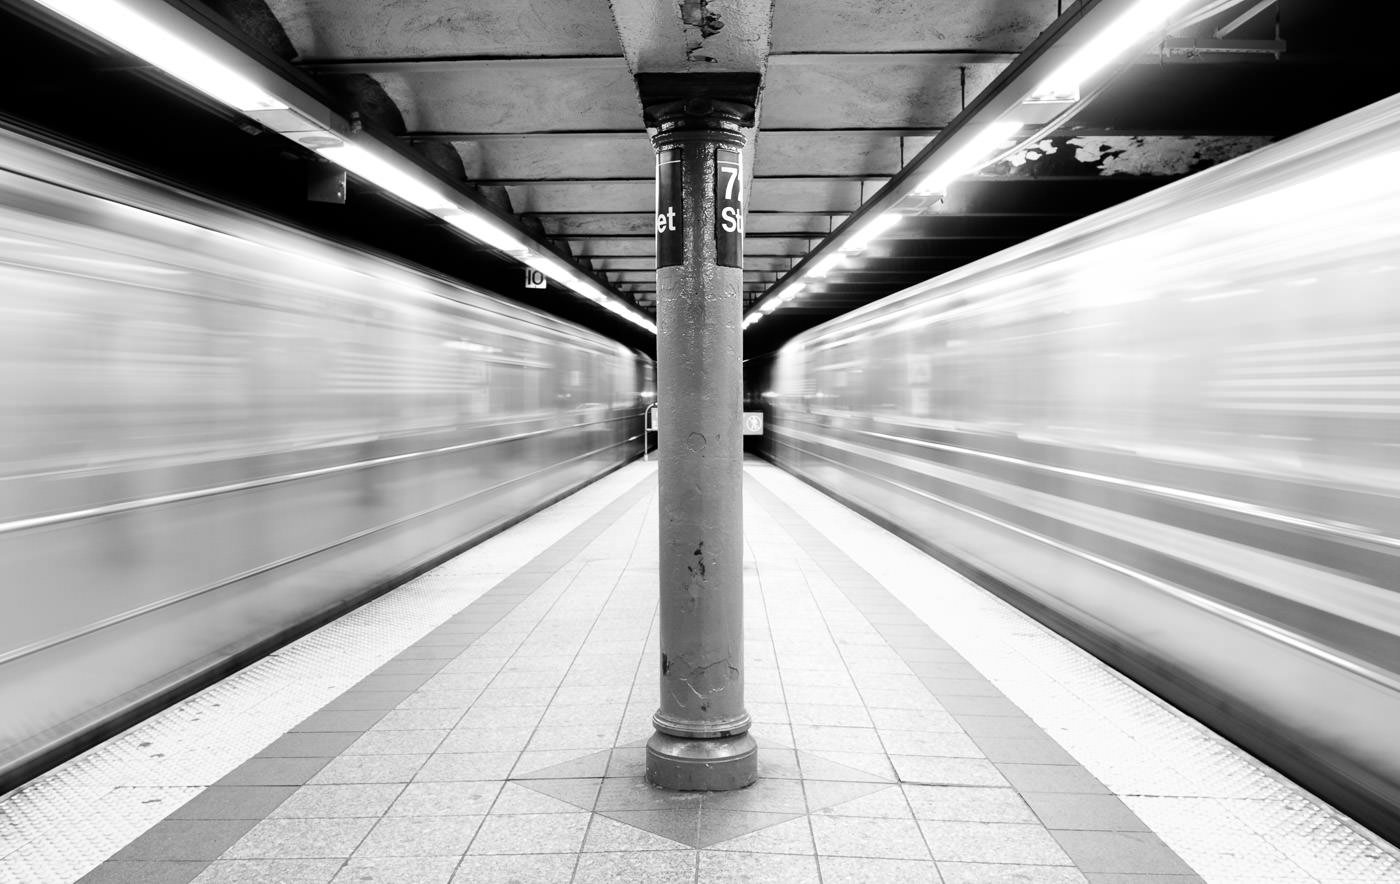 قطارهای متروی نیویورک از هر دو طرف سکو به سرعت در حال عبور هستند و فضای تاری در اطراف ایجاد می کنند